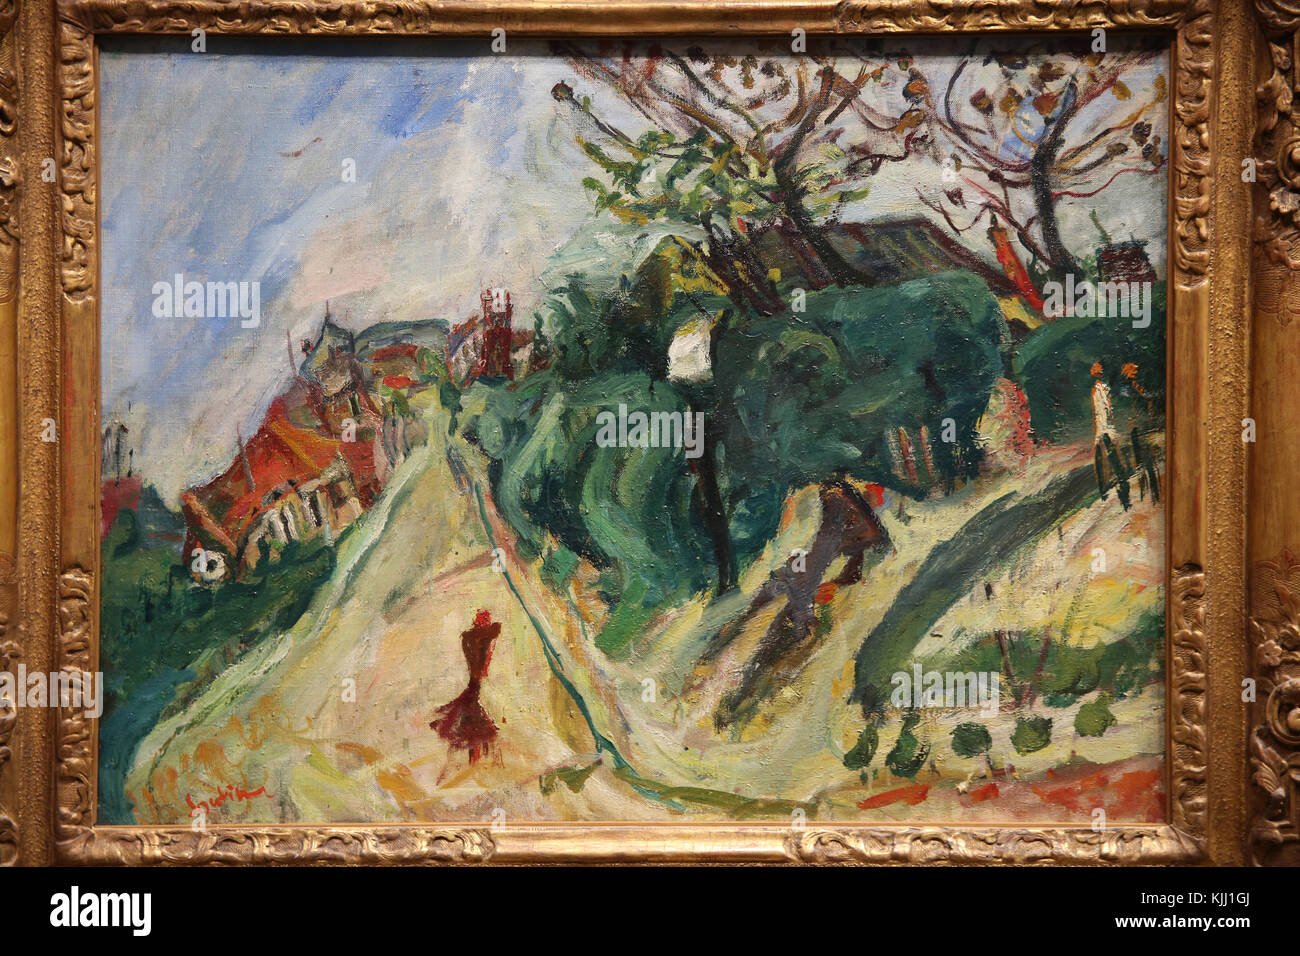 MusŽe de l'Orangerie, Paris. Cha • m Soutine, Paysage avec personnage, Vers 1918-1919. Huile sur toile. Frankreich. Stockfoto